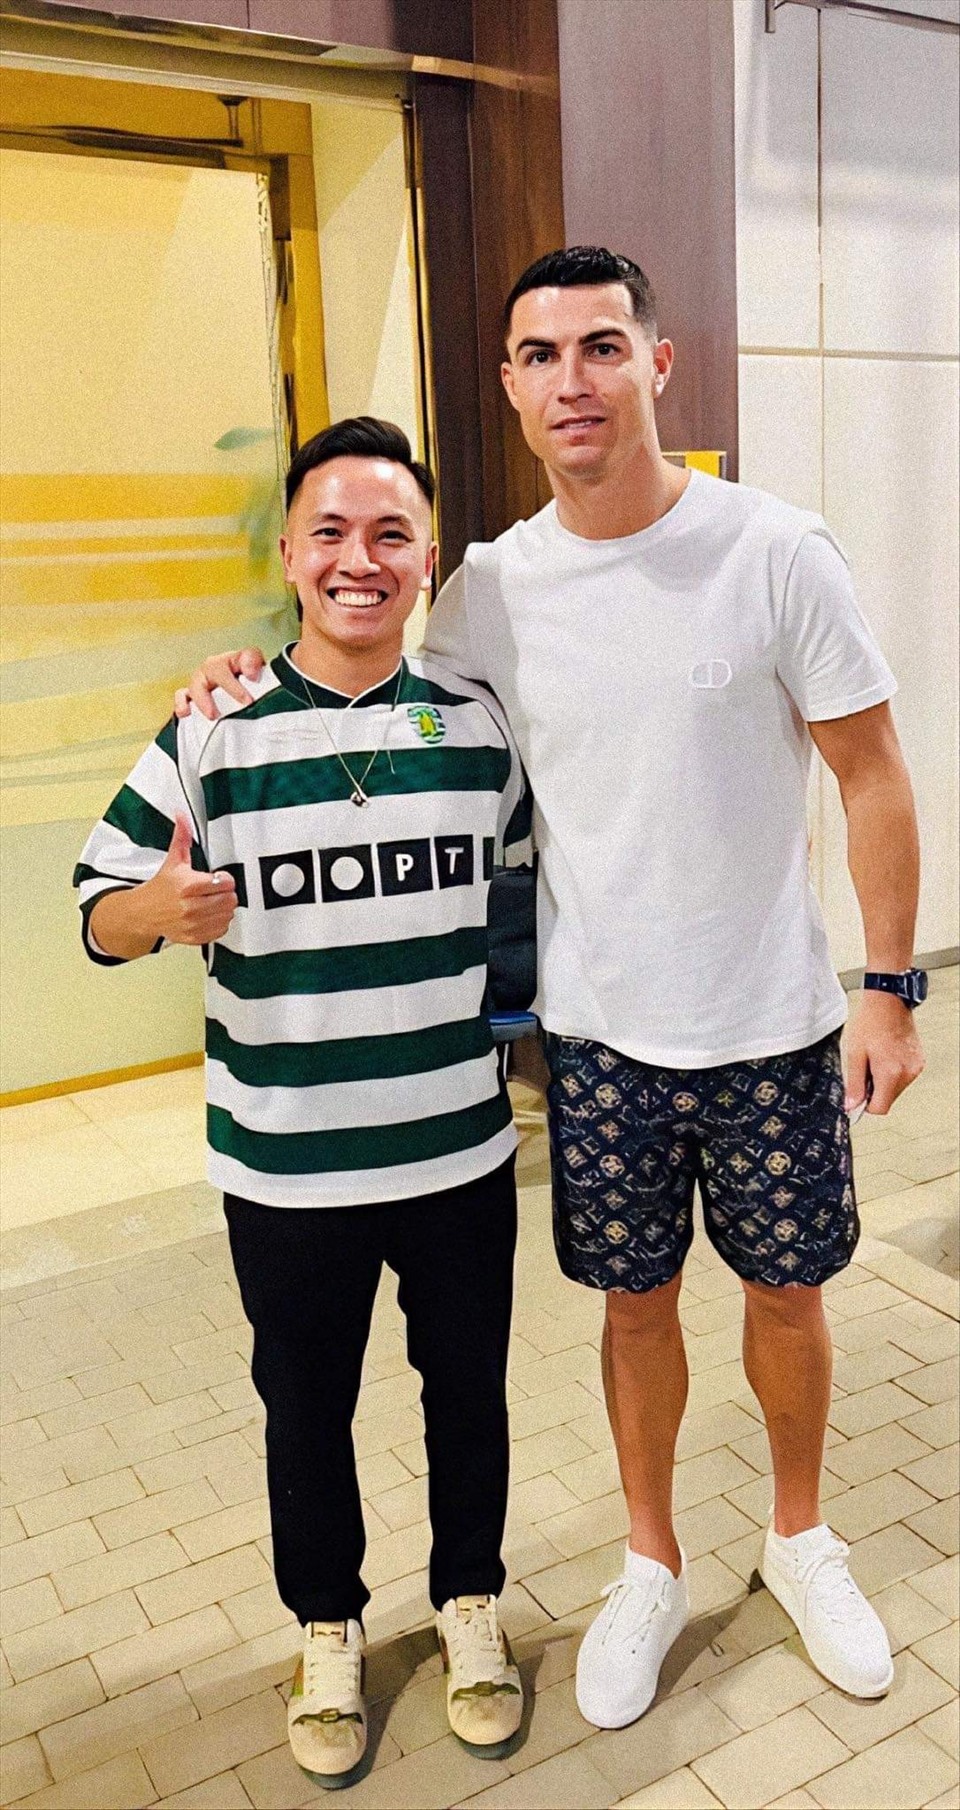 Vận động viên Đỗ Kim Phúc được gặp gỡ và giao lưu với siêu sao Ronaldo. Ảnh: Nhân vật cung cấp